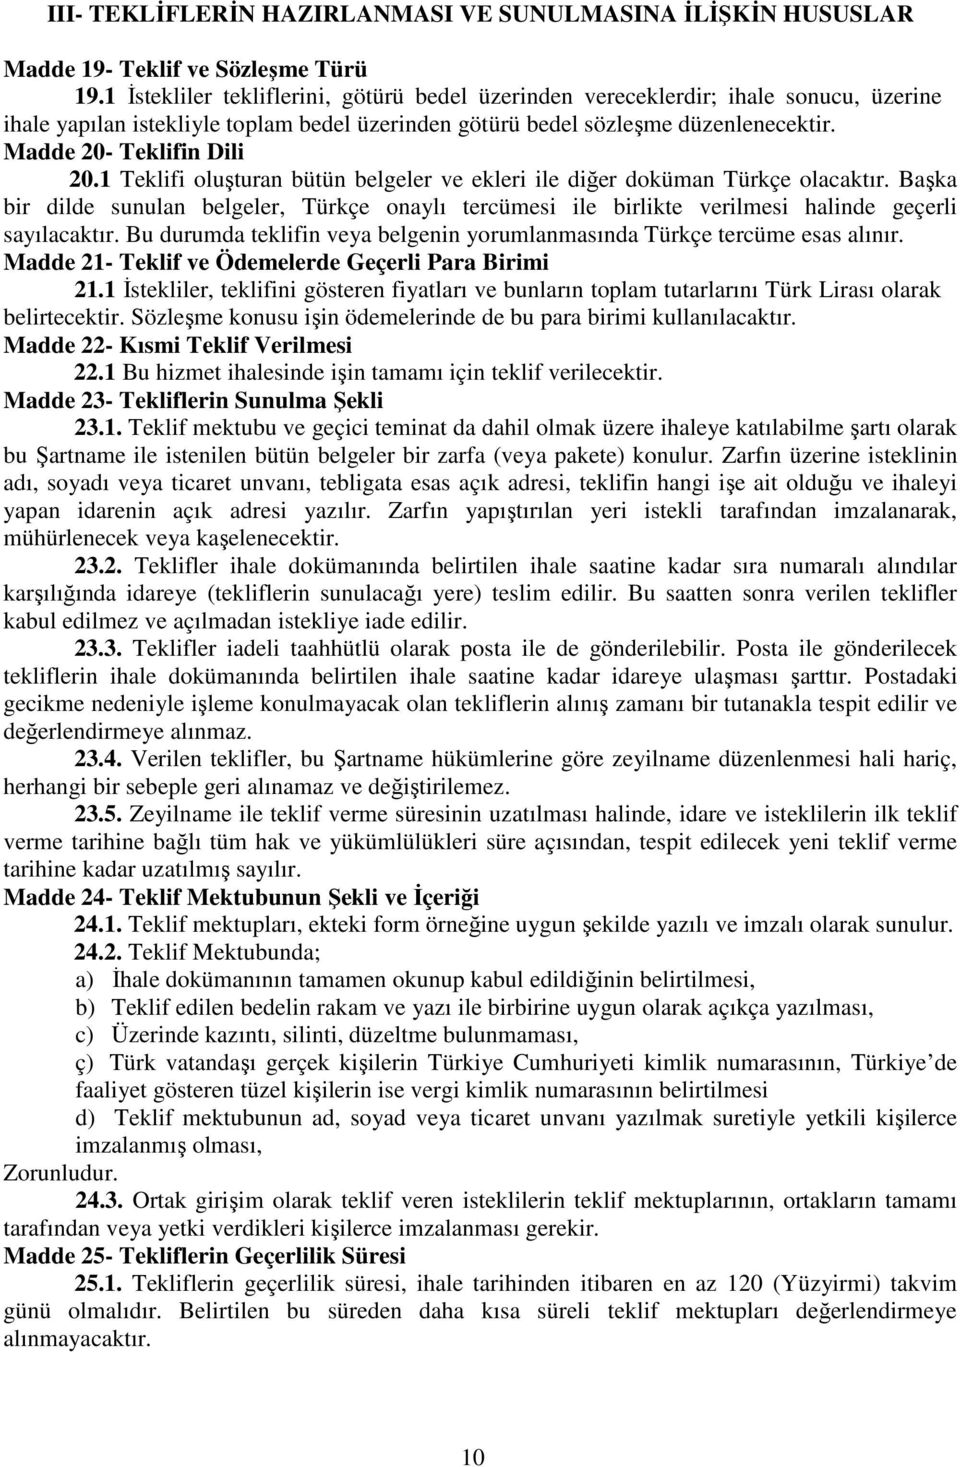 Madde 20- Teklifin Dili 20.1 Teklifi oluşturan bütün belgeler ve ekleri ile diğer doküman Türkçe olacaktır.